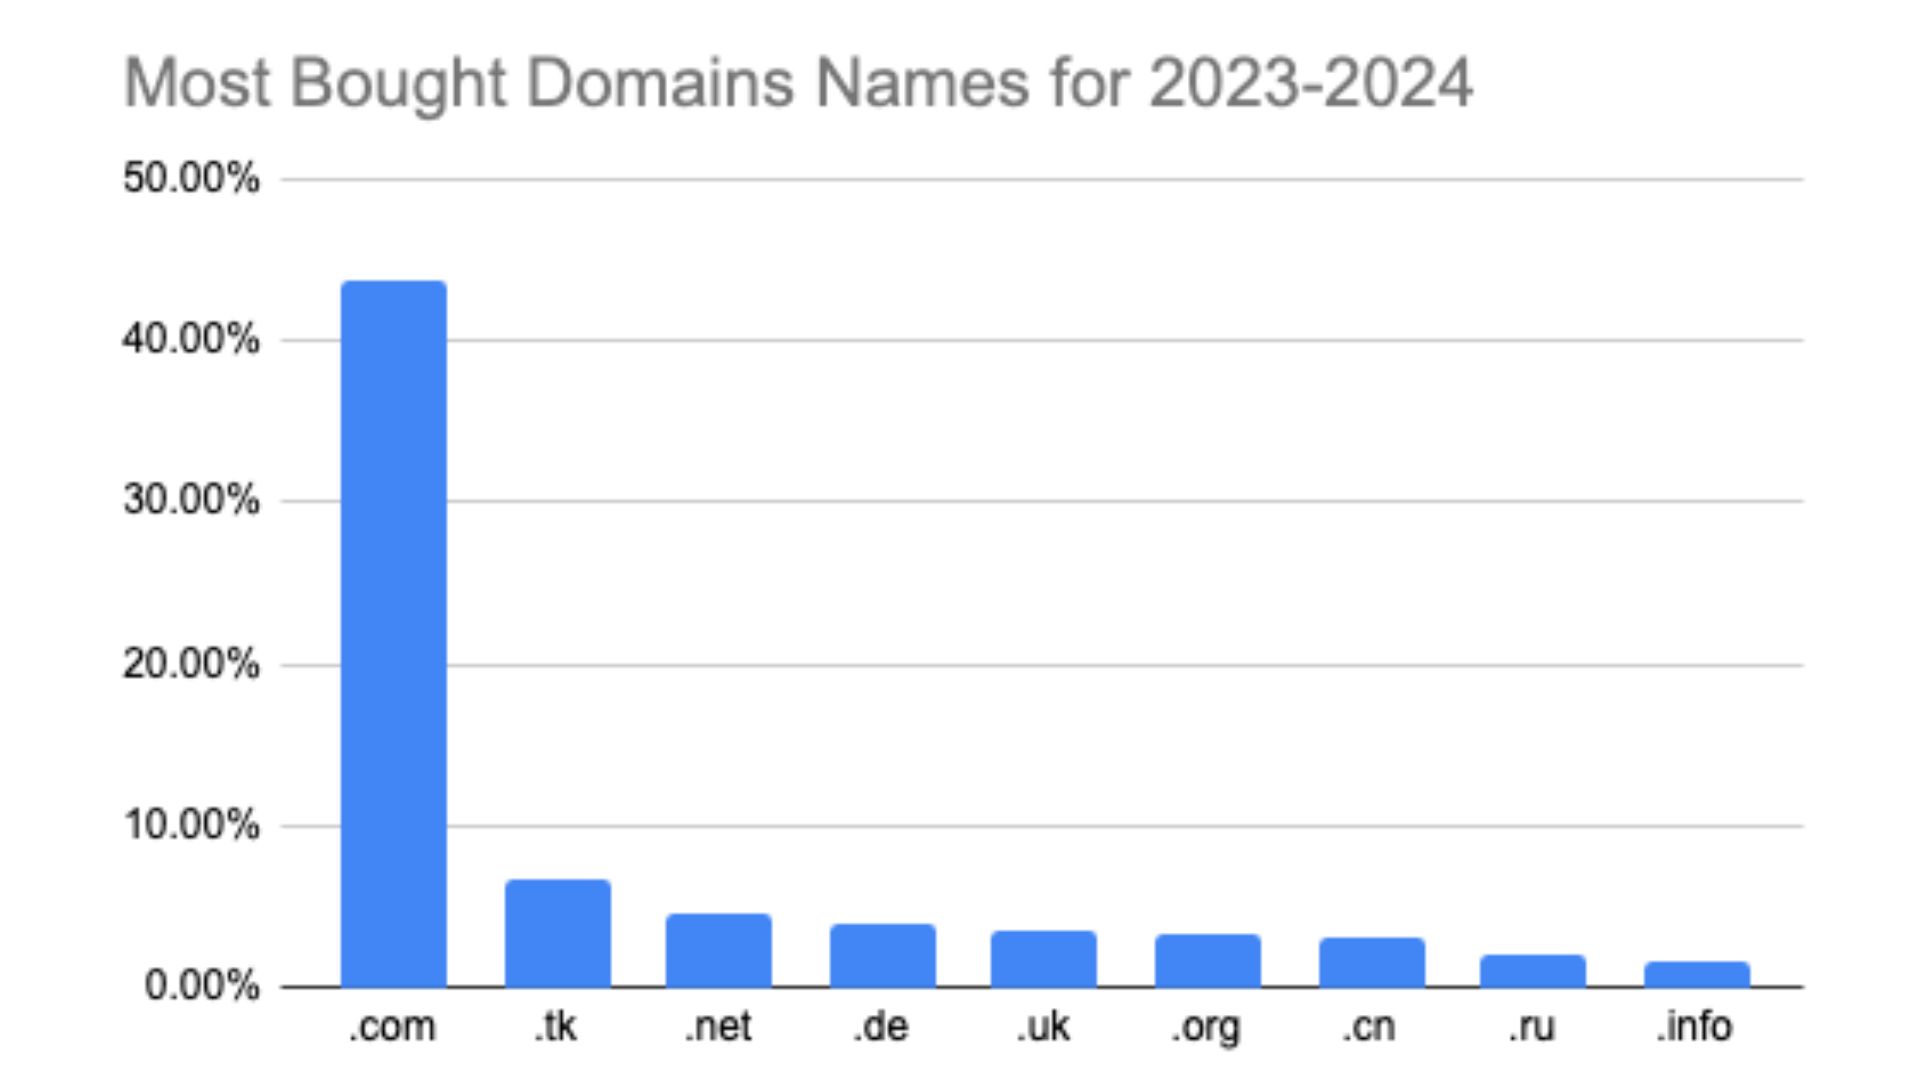 domini più acquistati per estensione di dominio